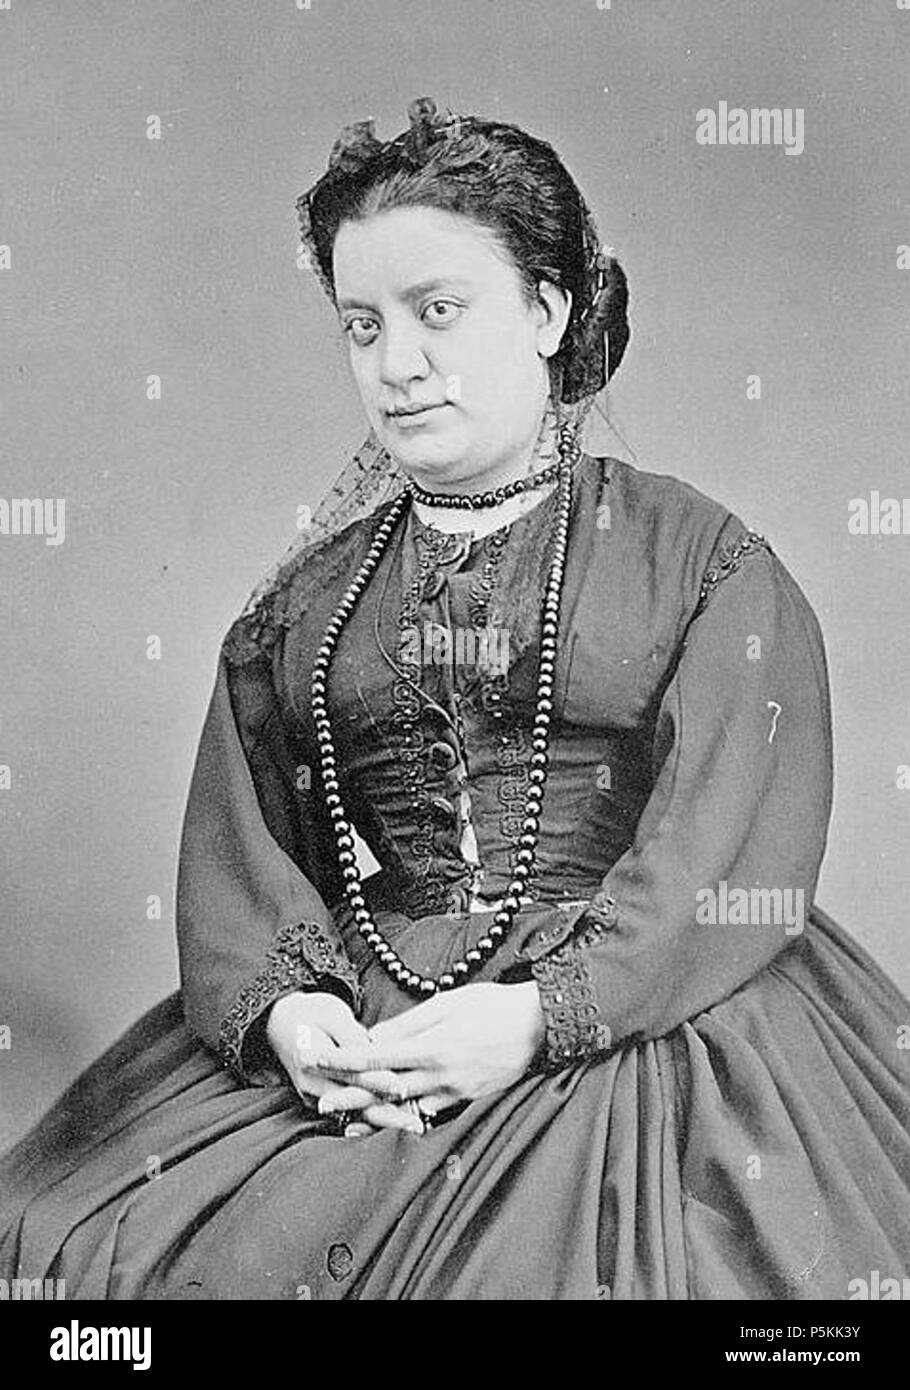 N/A. Español: Ángela Peralta. Cantante de Opera. zwischen 1870 und 1880. Andres Martinez y Ca. Fotografos 101 Angela Peralta Stockfoto